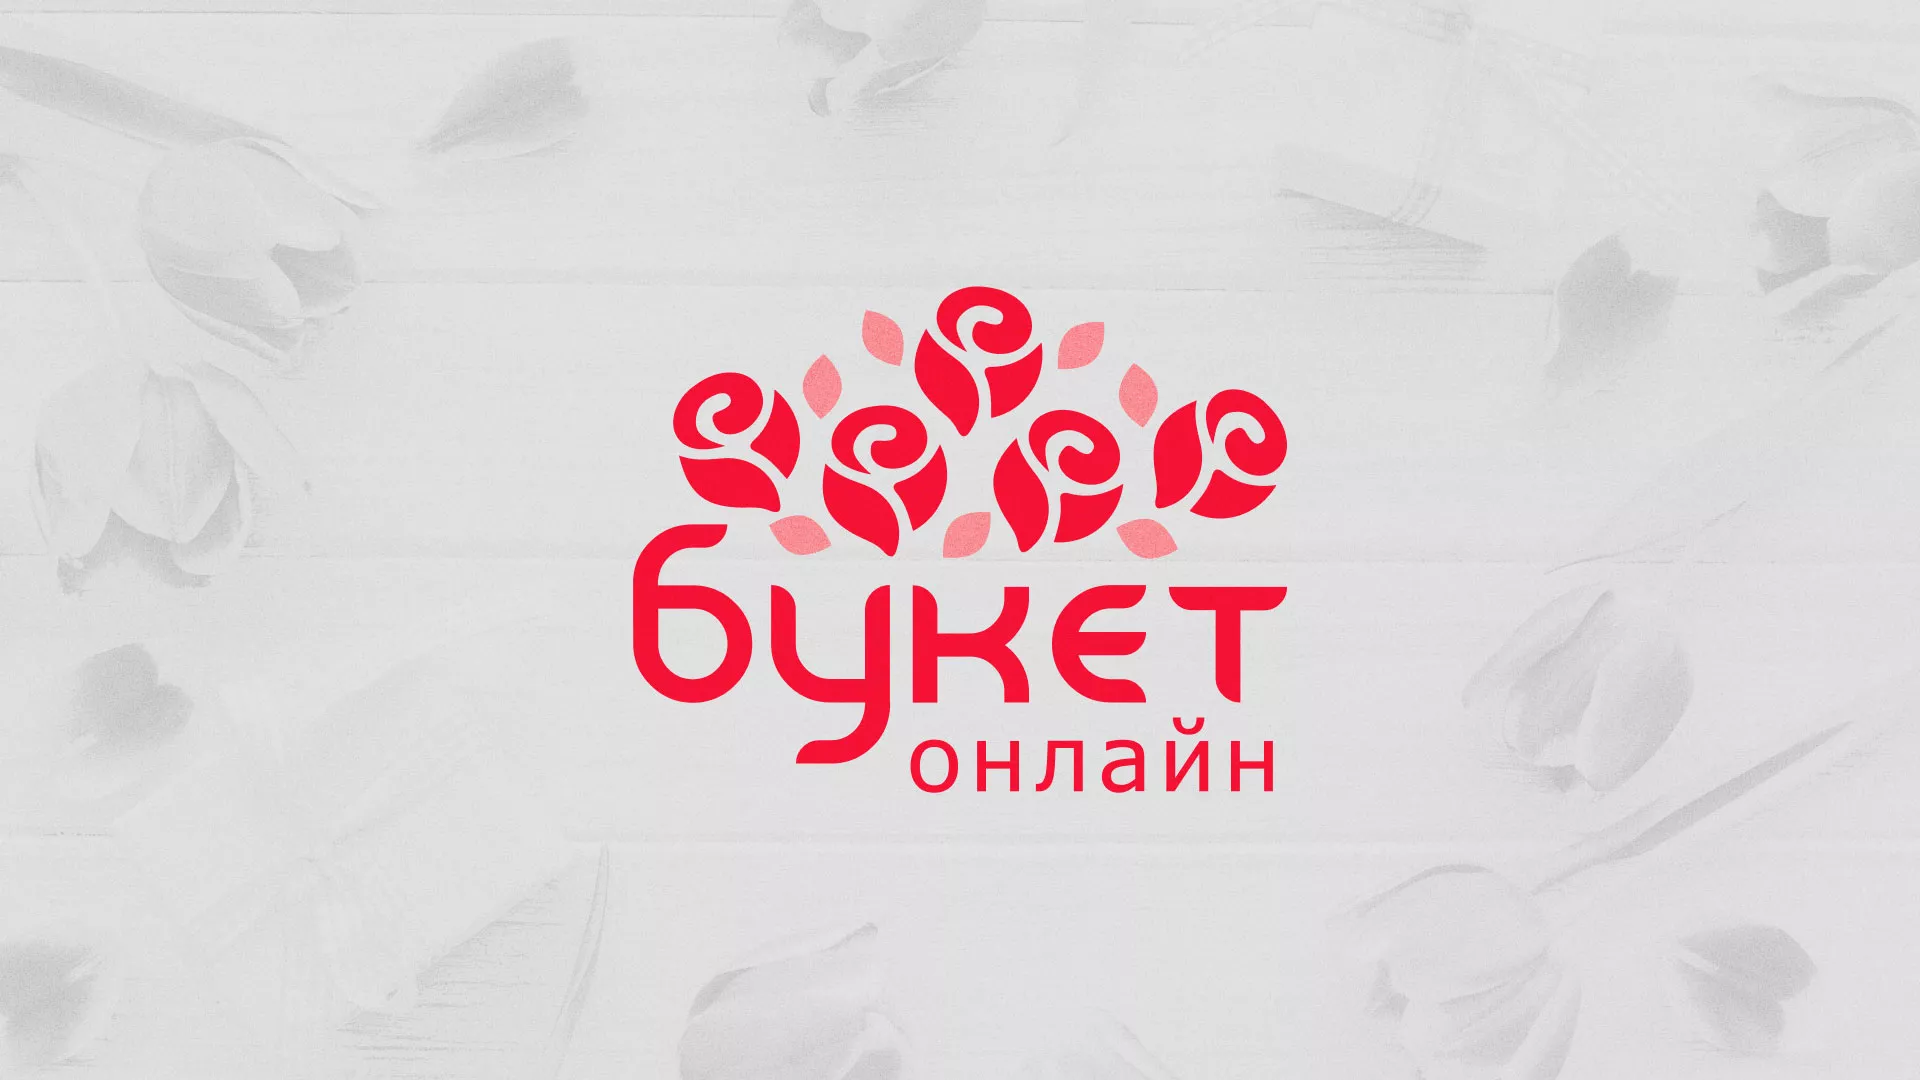 Создание интернет-магазина «Букет-онлайн» по цветам в Лесном